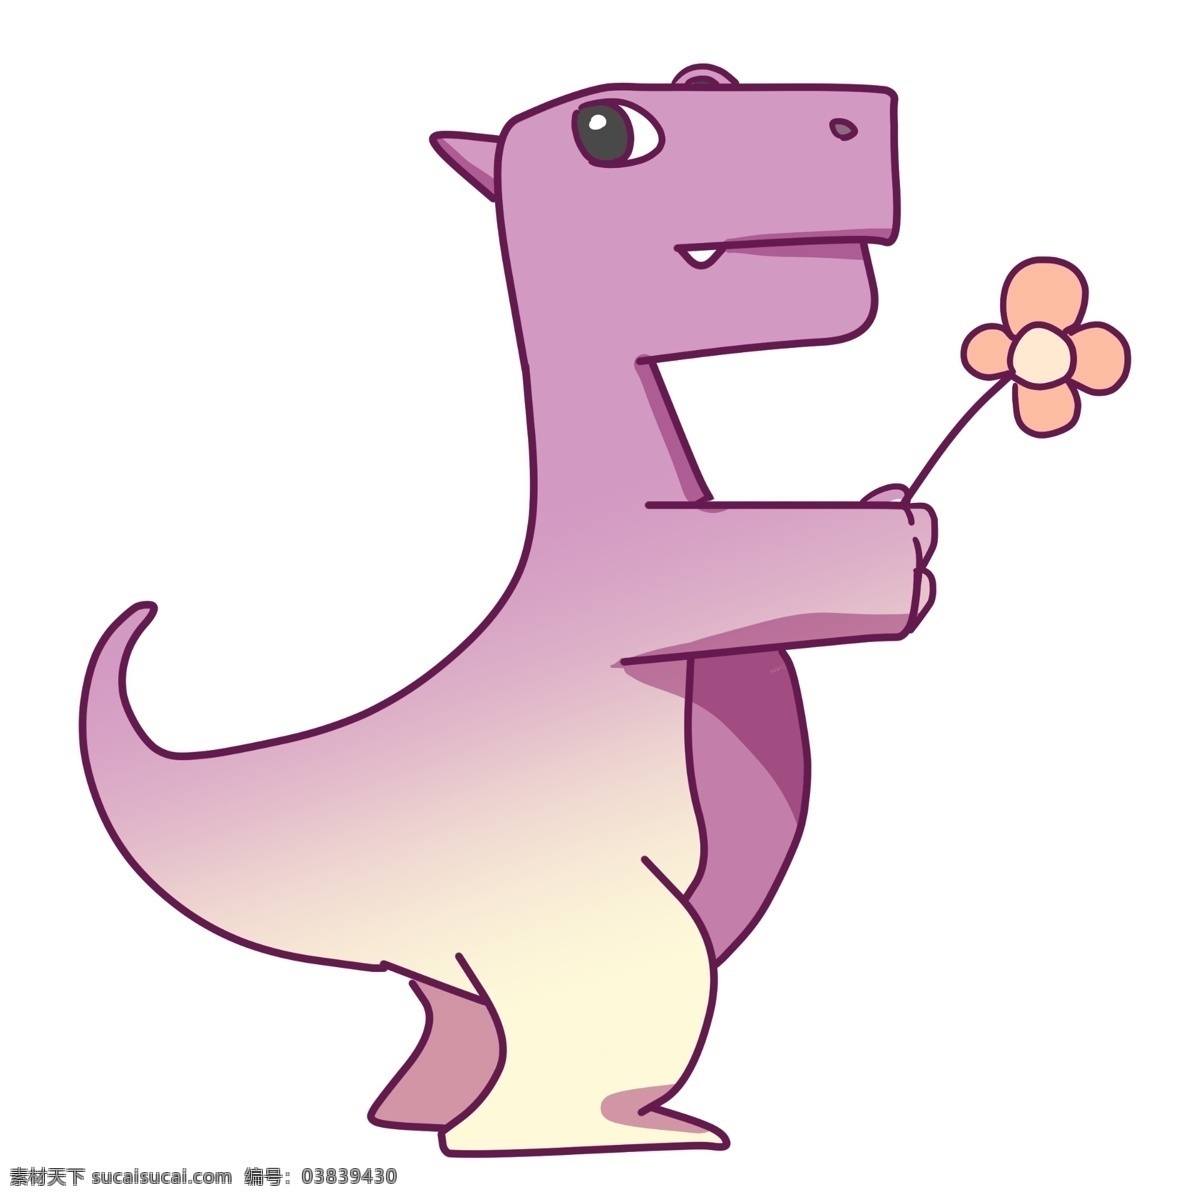 花朵 恐龙 插画 粉色的花朵 卡通插画 恐龙插画 动物插画 白垩纪恐龙 恐龙玩具 粉色的恐龙